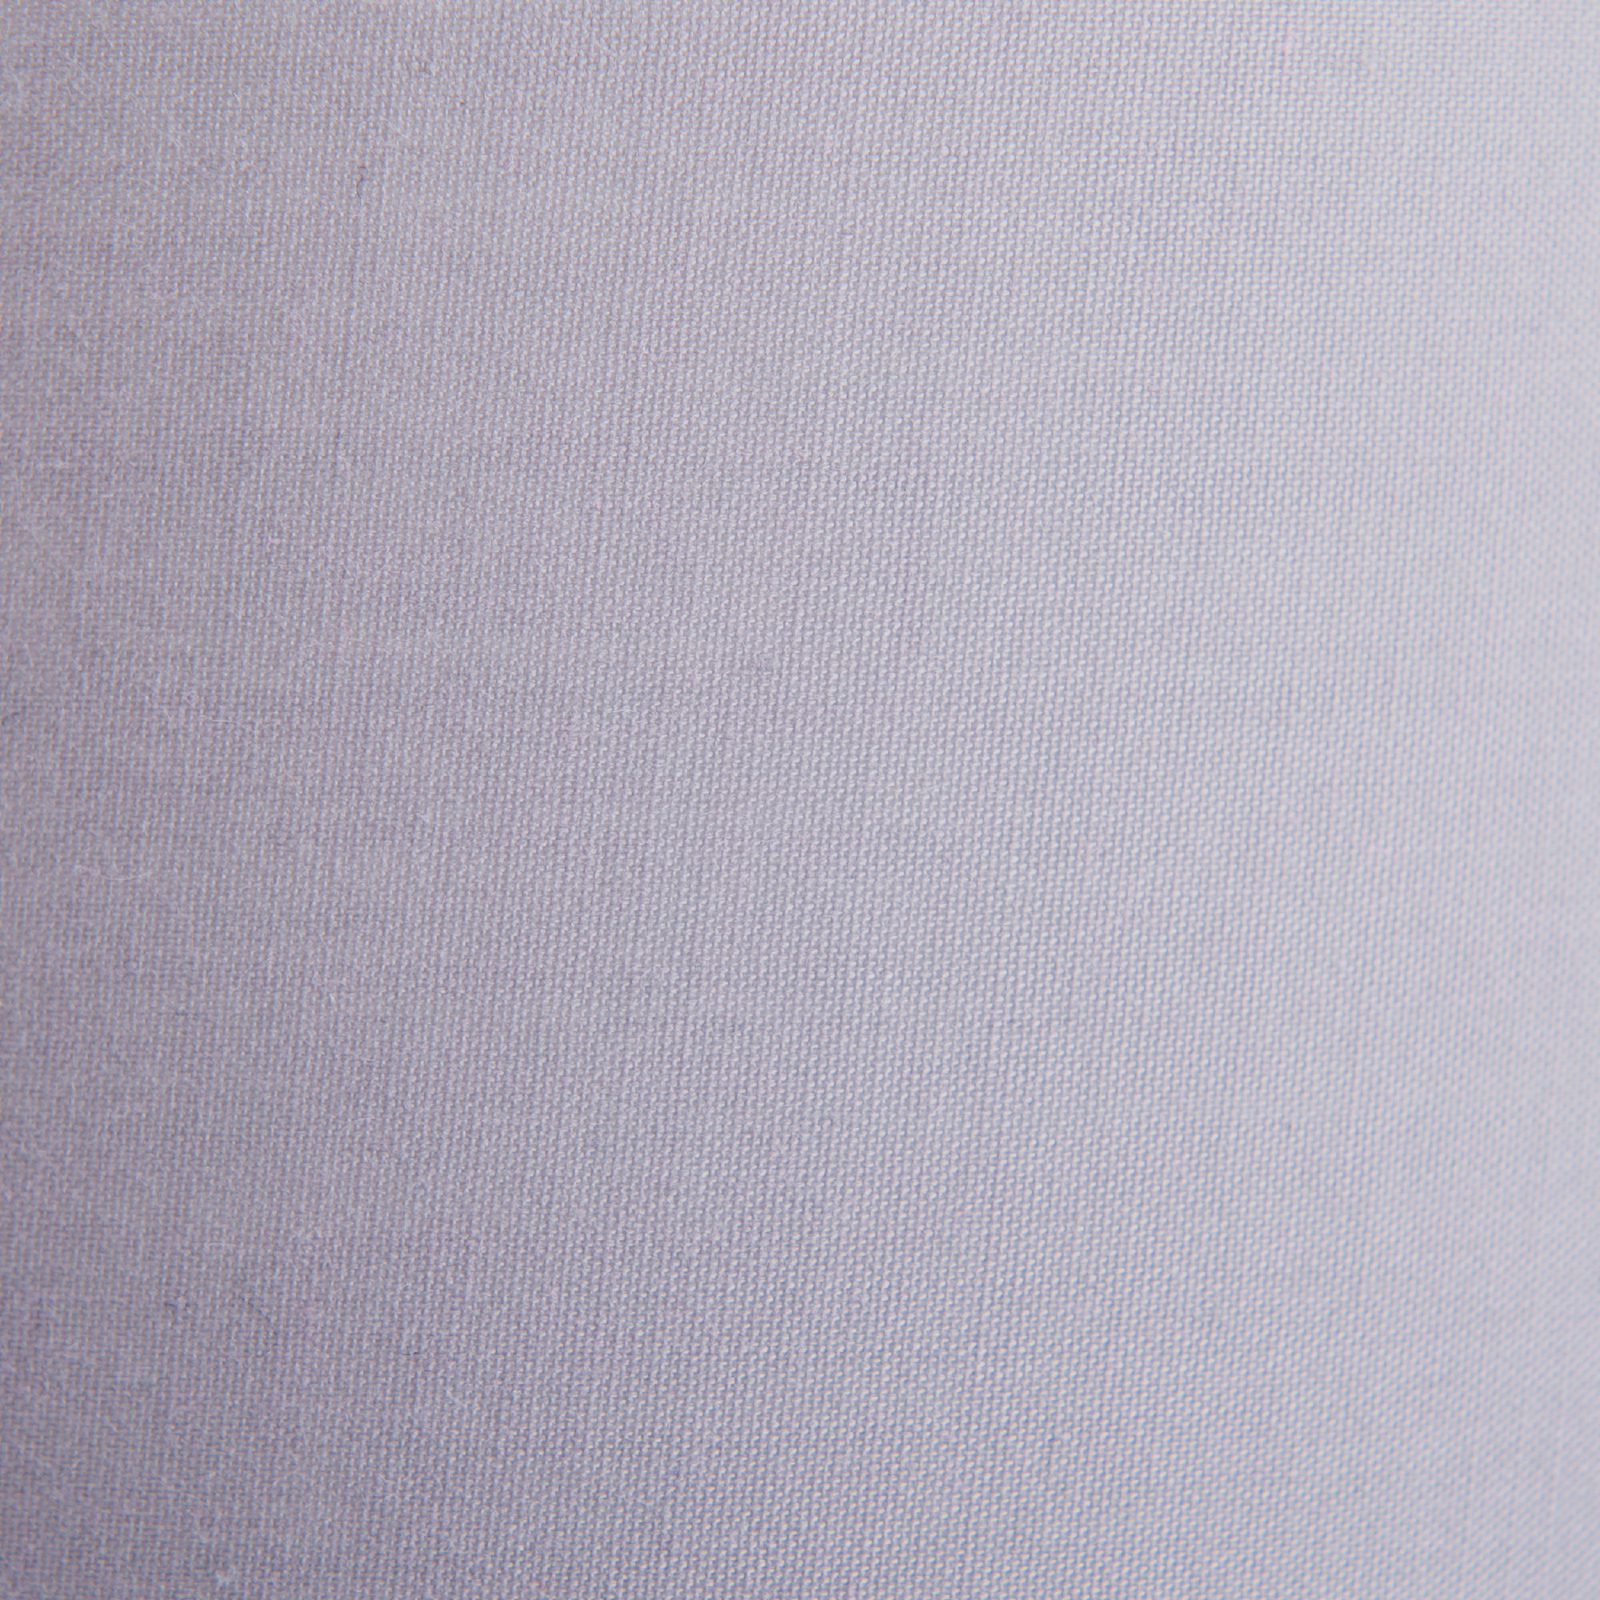 Hängelampe Tilde, Textilschirme, 4fl, grau/weiß